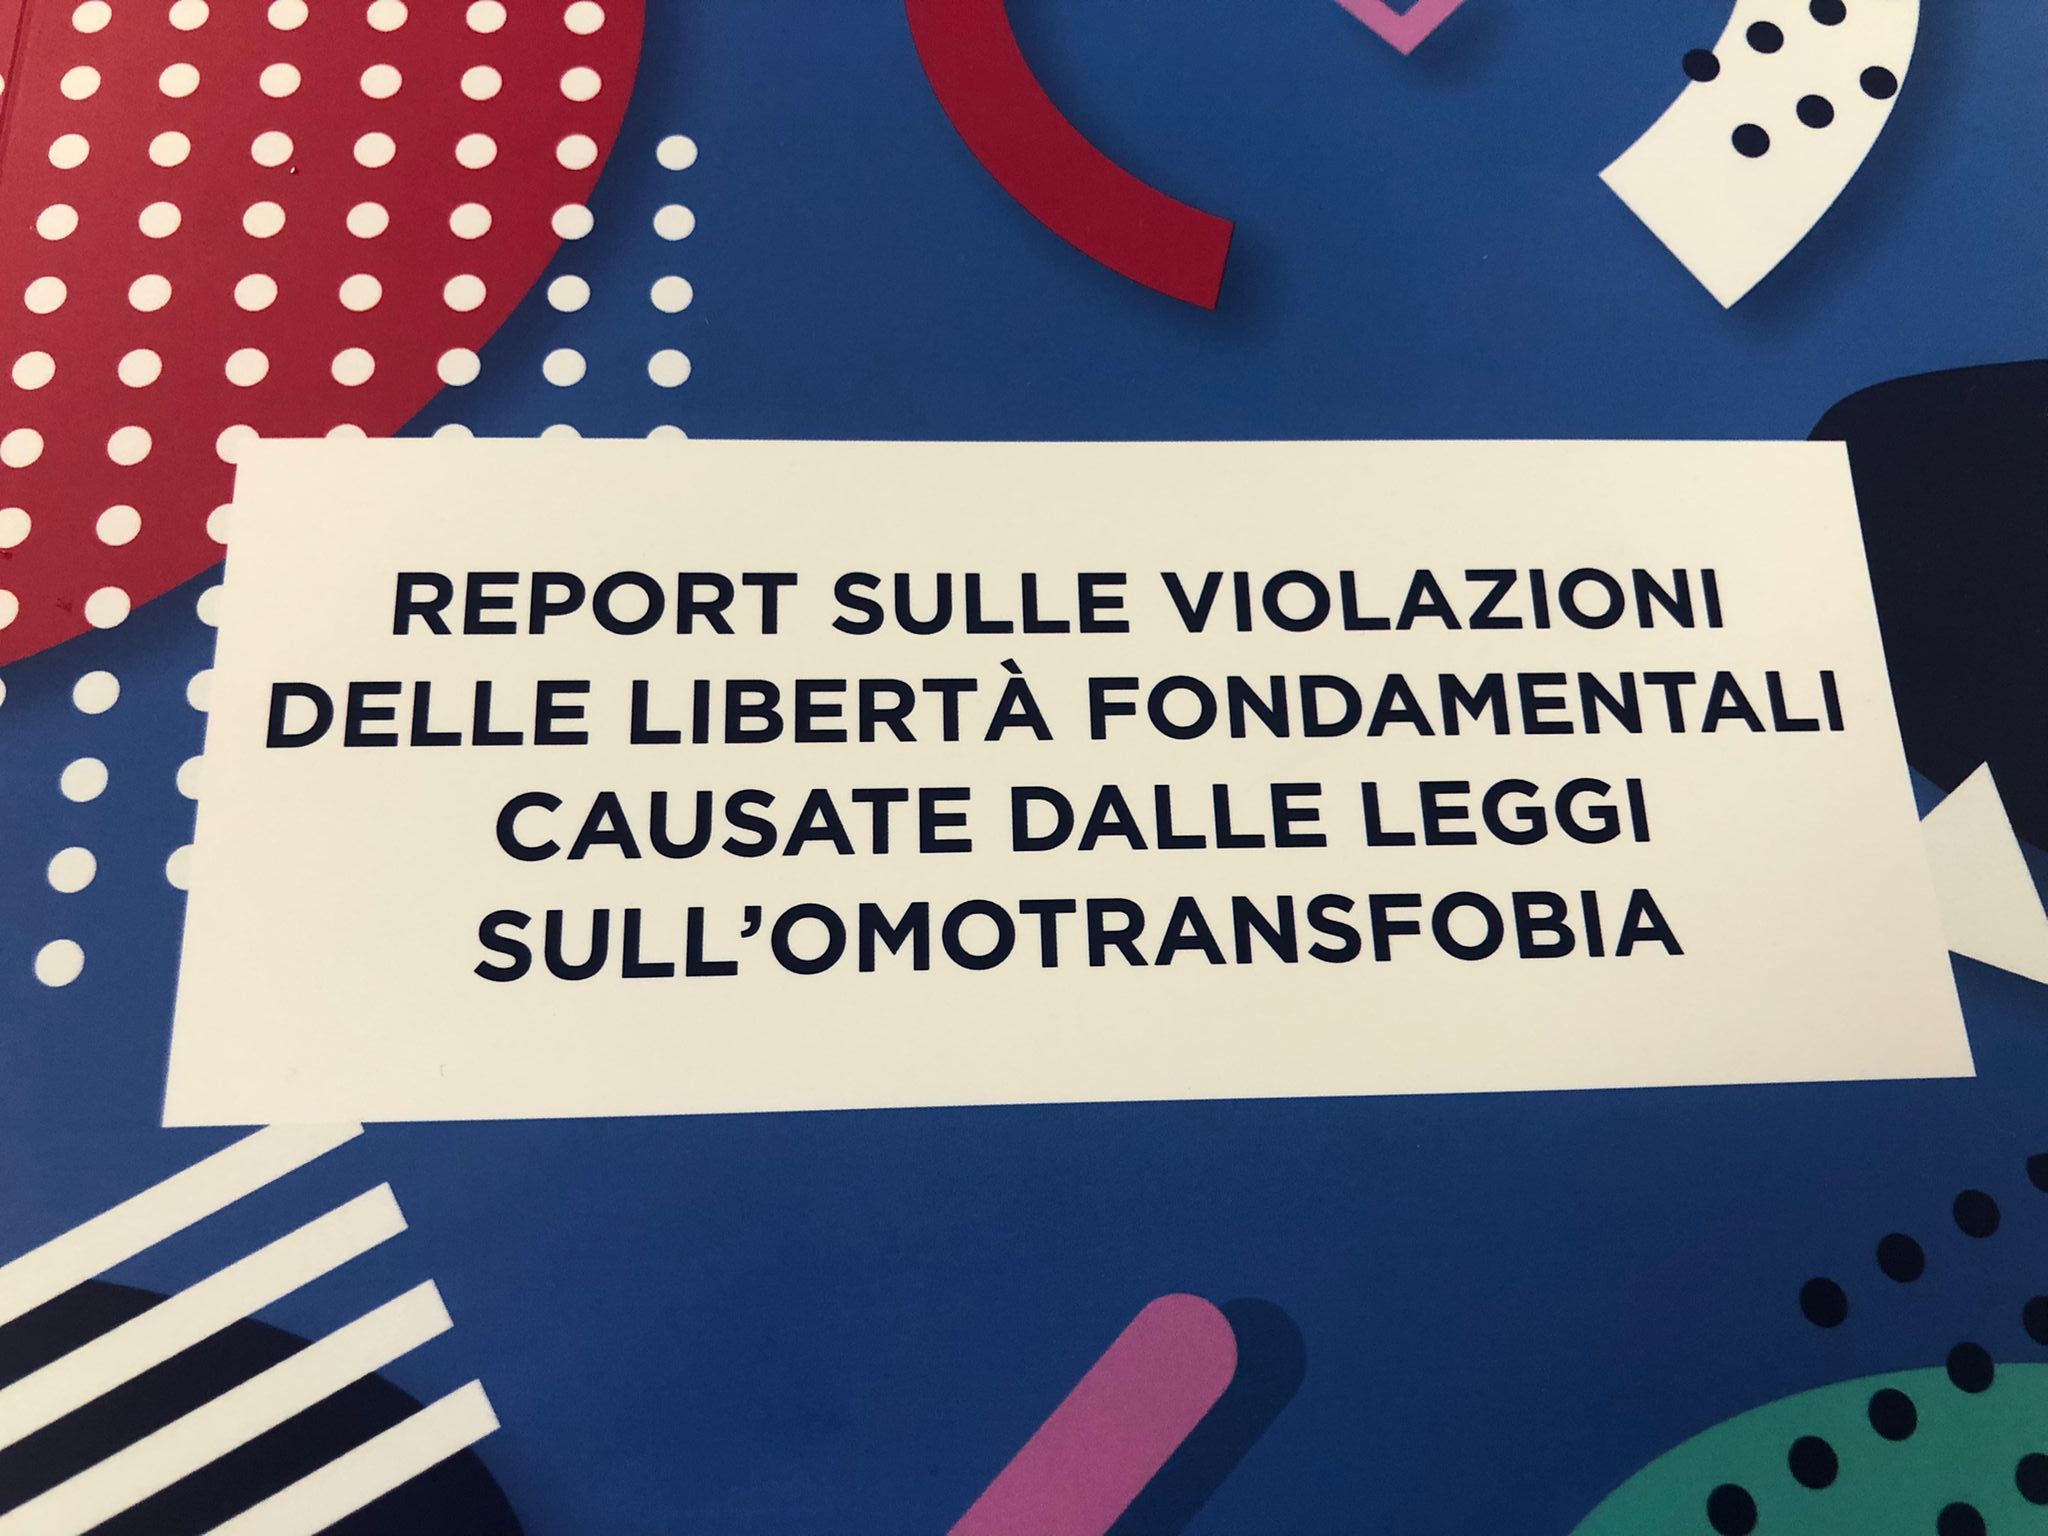 Omotransfobia. PV&F: «Nel nostro Primo Report sulle violazioni delle libertà fondamentali centinaia di casi choc che si rischia di replicare qui in Italia» 1